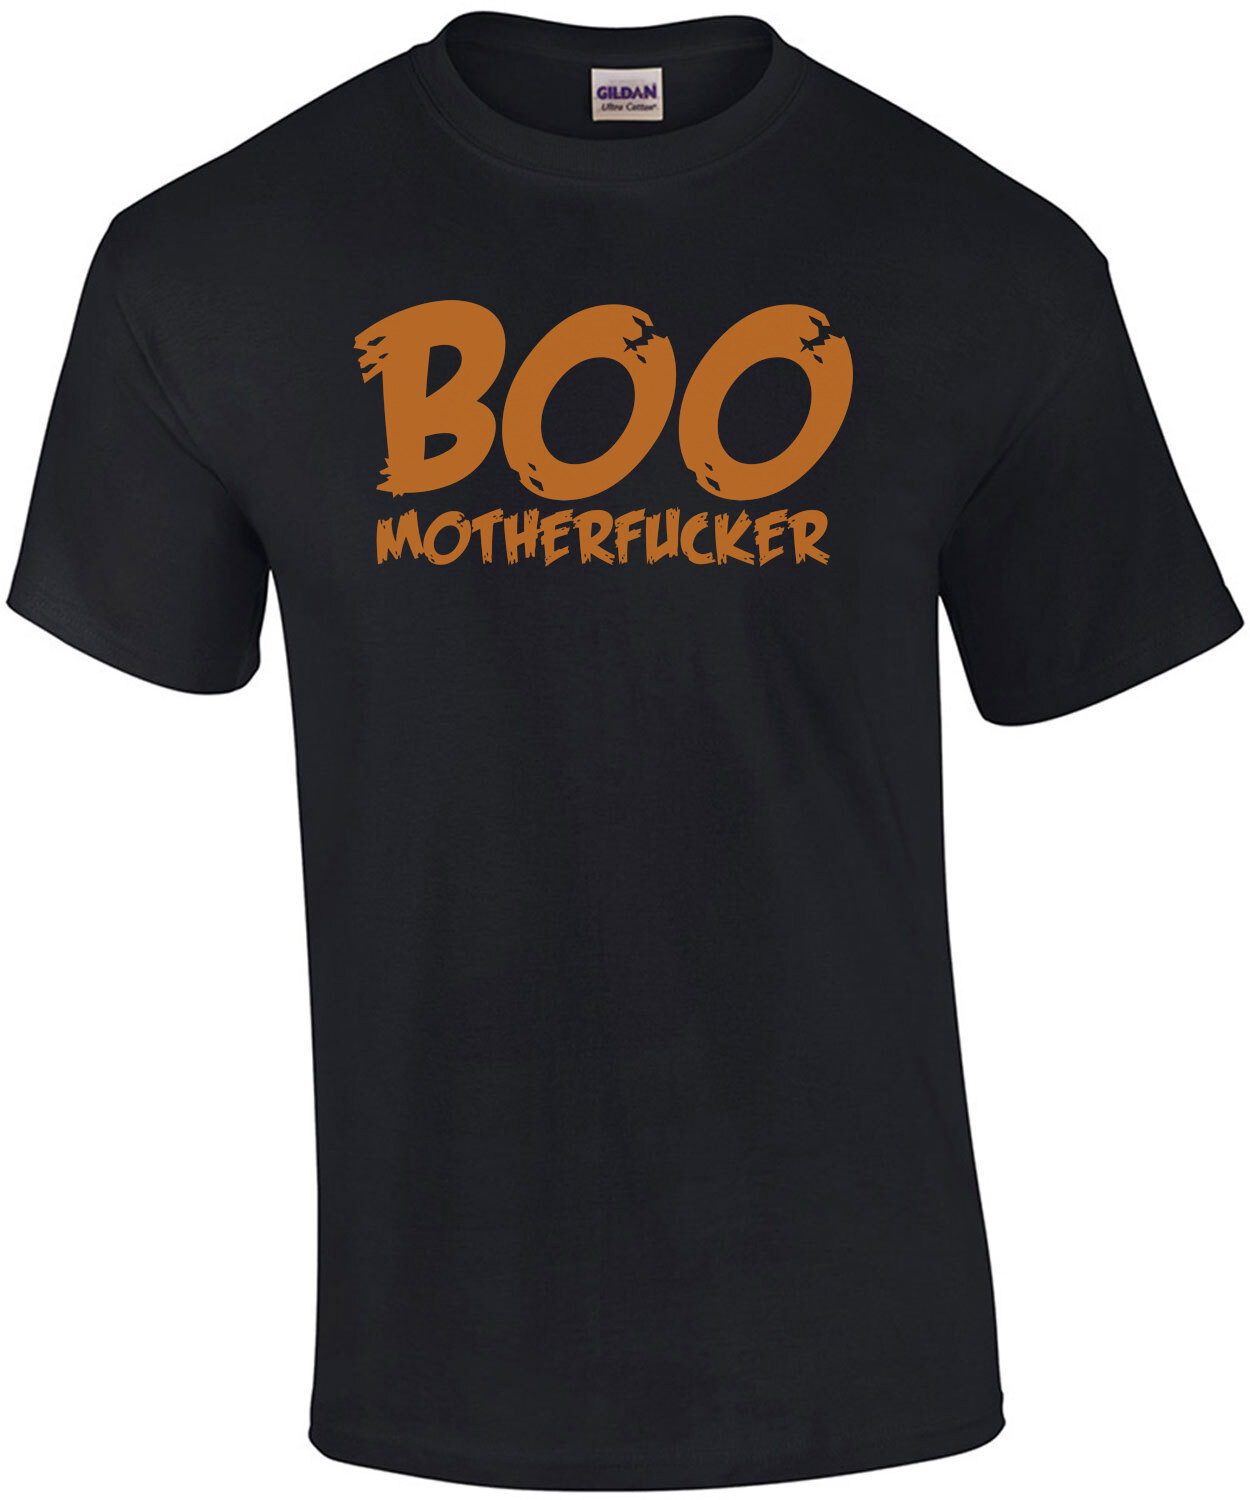 Boo Motherfucker Funny Halloween Shirt